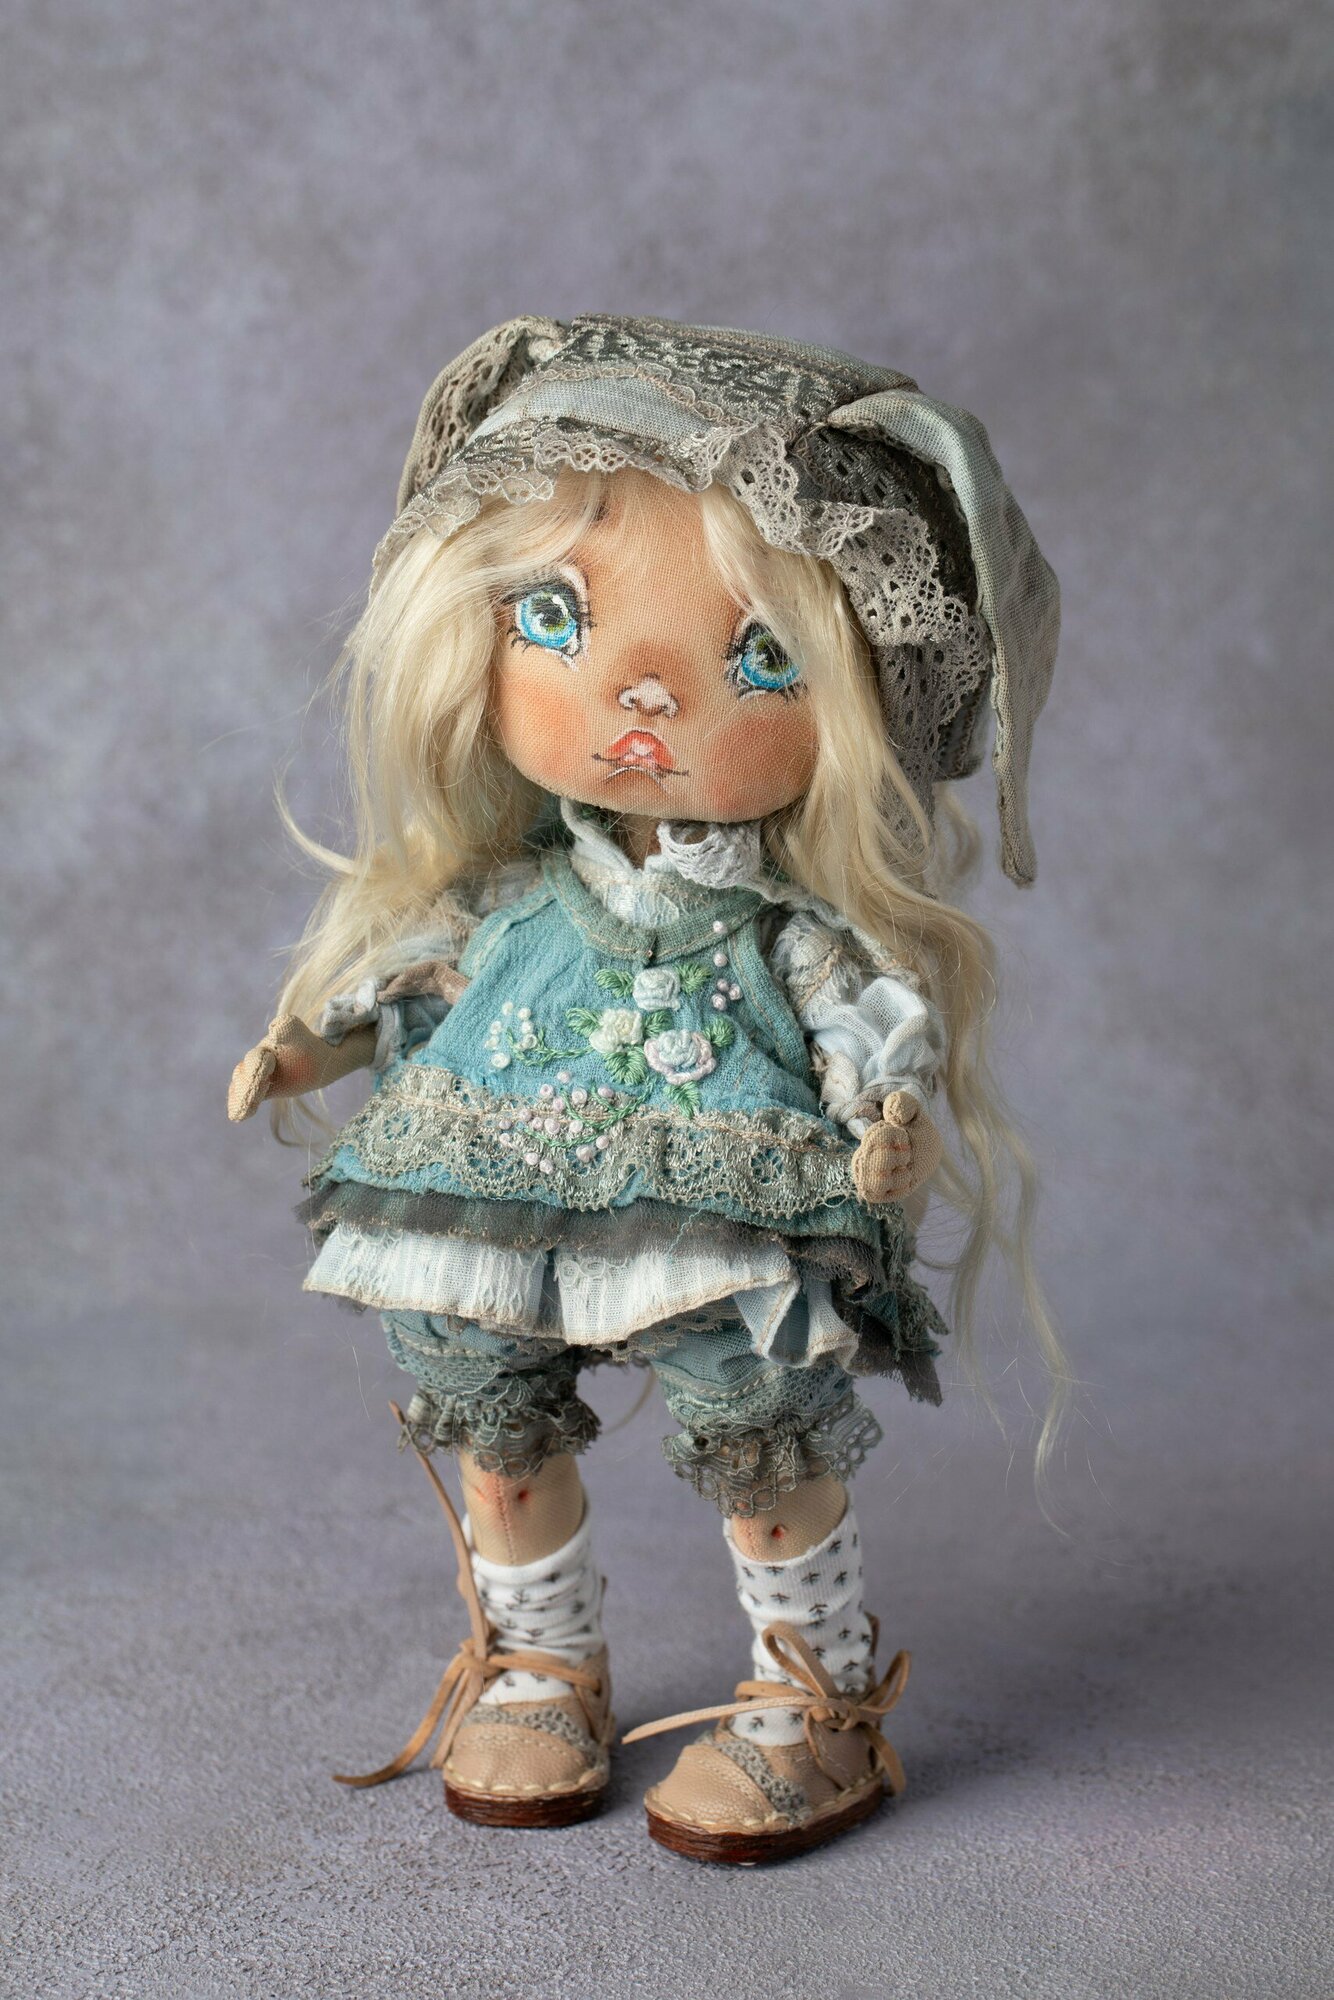 Авторская кукла "Девочка в голубом" ручной работы, интерьерная